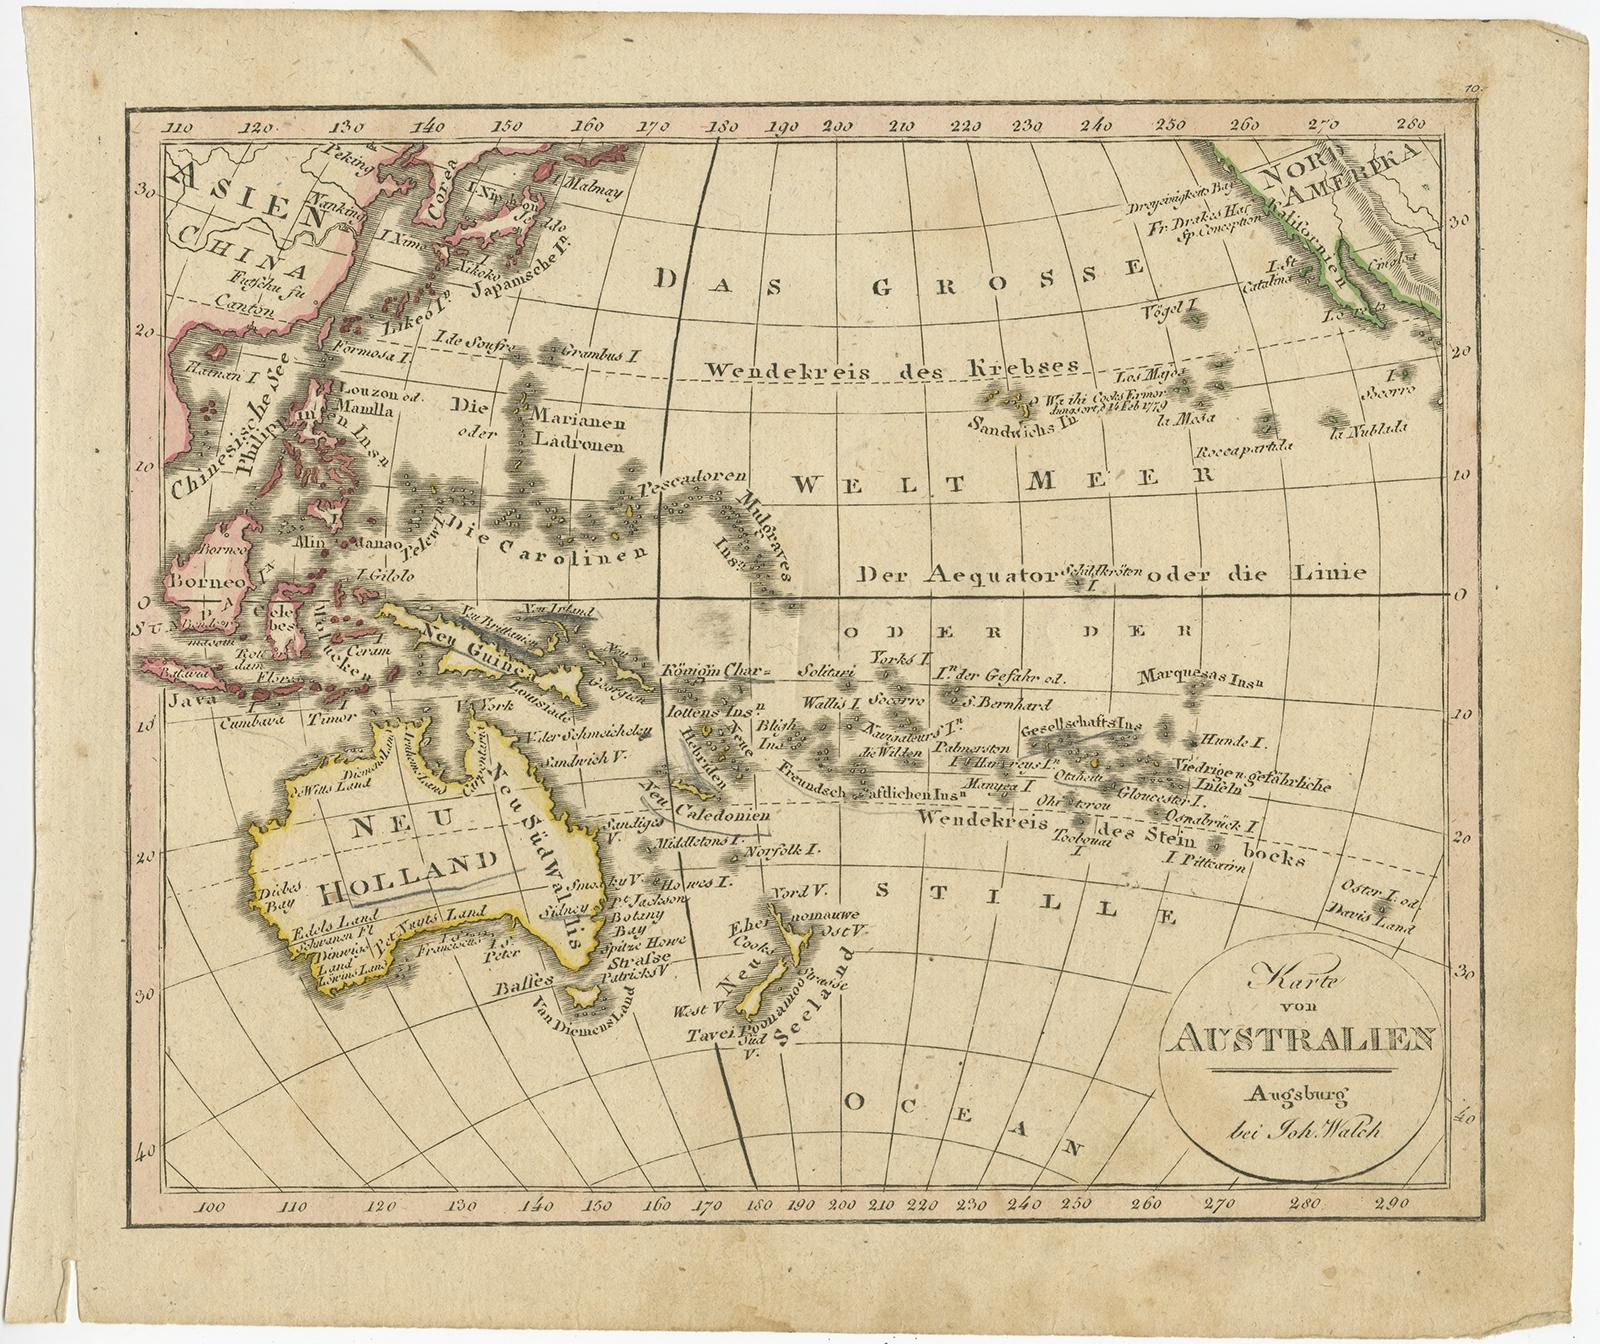 Antike Karte von Australien mit dem Titel 'Karte von Australien'. Alte Karte von Australien und Neuseeland. Veröffentlicht in Walchs 'Neuer Schul-Atlas'. 

Künstler und Graveure: Johann oder Johannes Walch (1757-1816) war ein Maler und